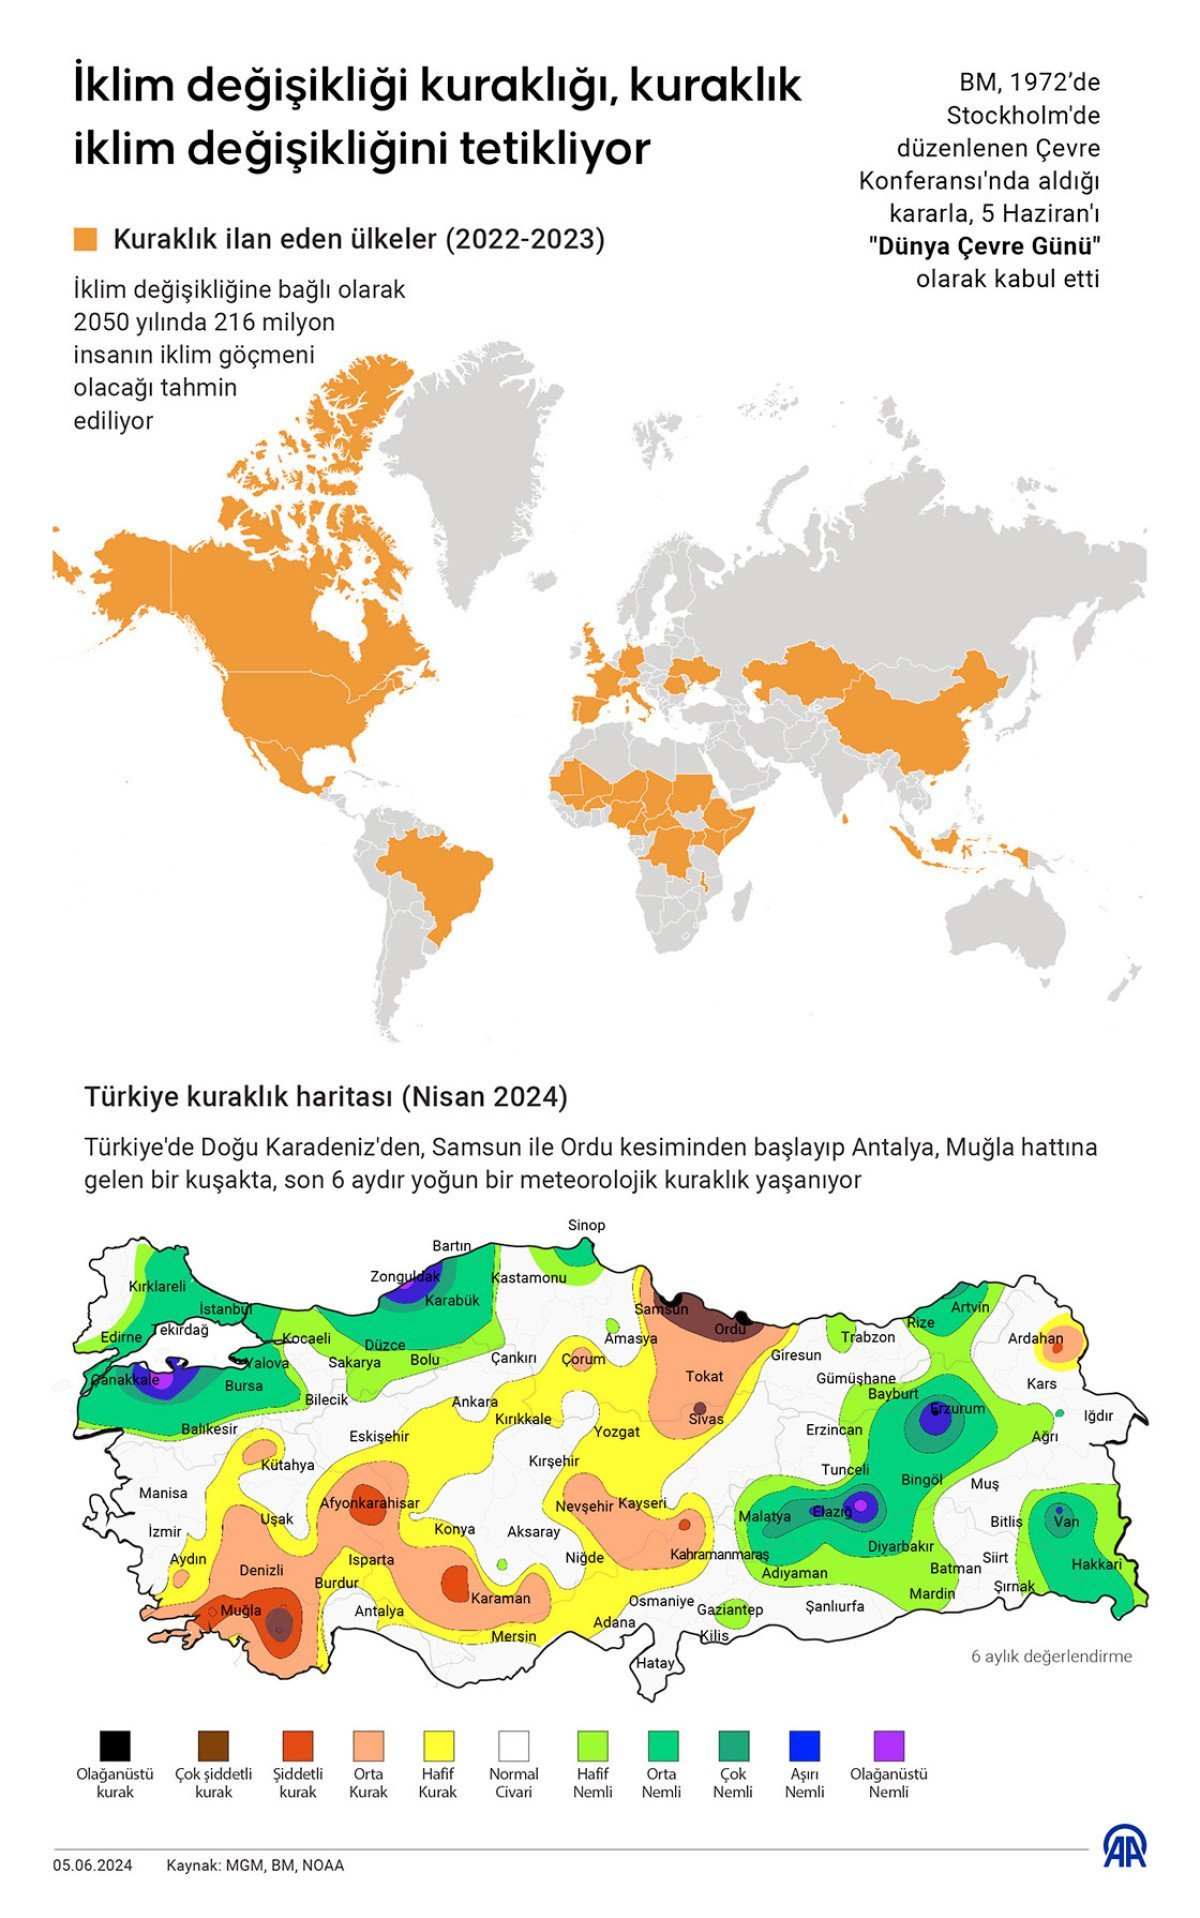 tehlike giderek buyuyor turkiyenin kuraklik haritasi cikarildi 1 4GzQ8YP4